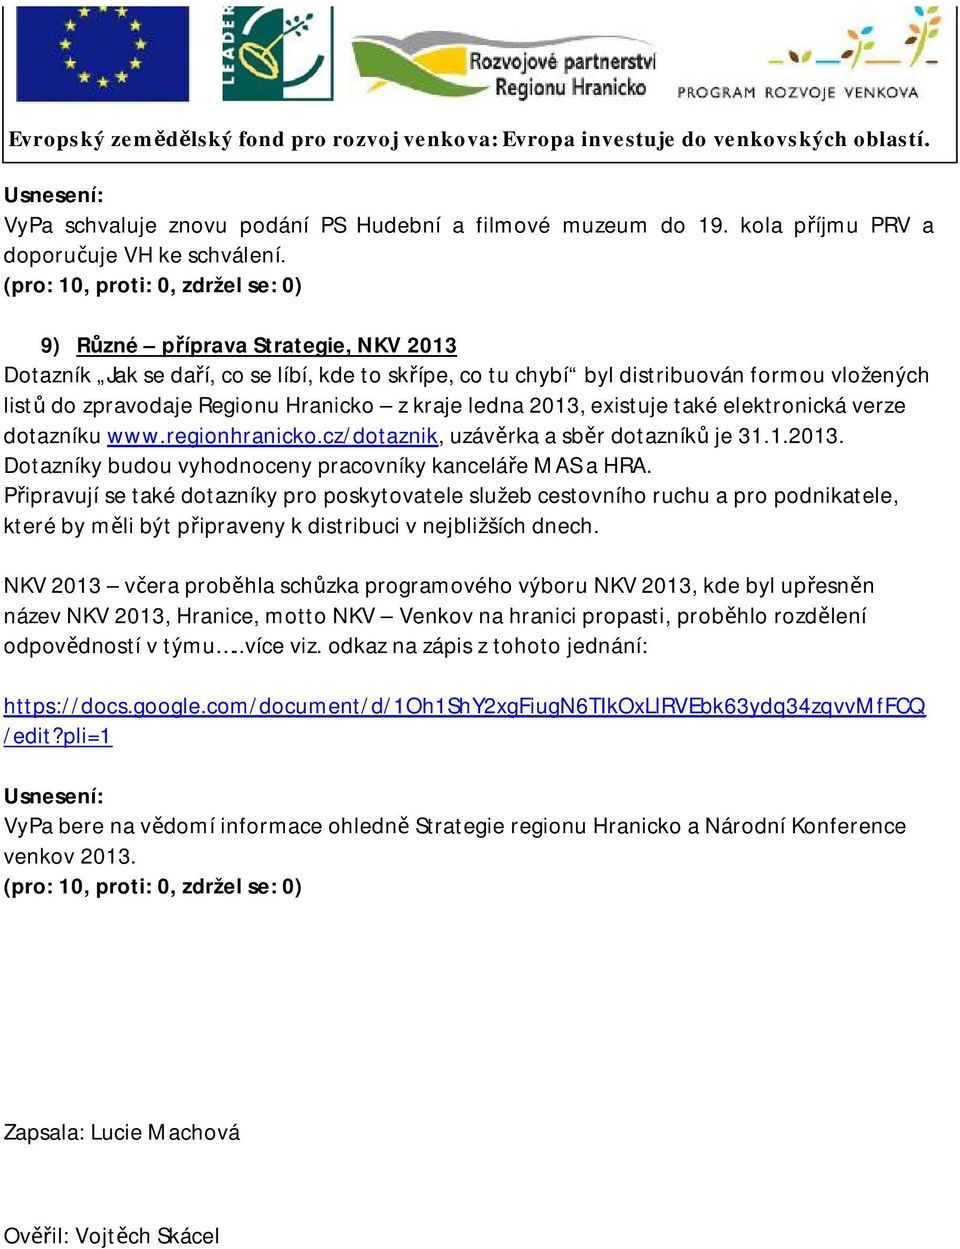 ledna 2013, existuje také elektronická verze dotazníku www.regionhranicko.cz/dotaznik, uzávěrka a sběr dotazníků je 31.1.2013. Dotazníky budou vyhodnoceny pracovníky kanceláře MAS a HRA.